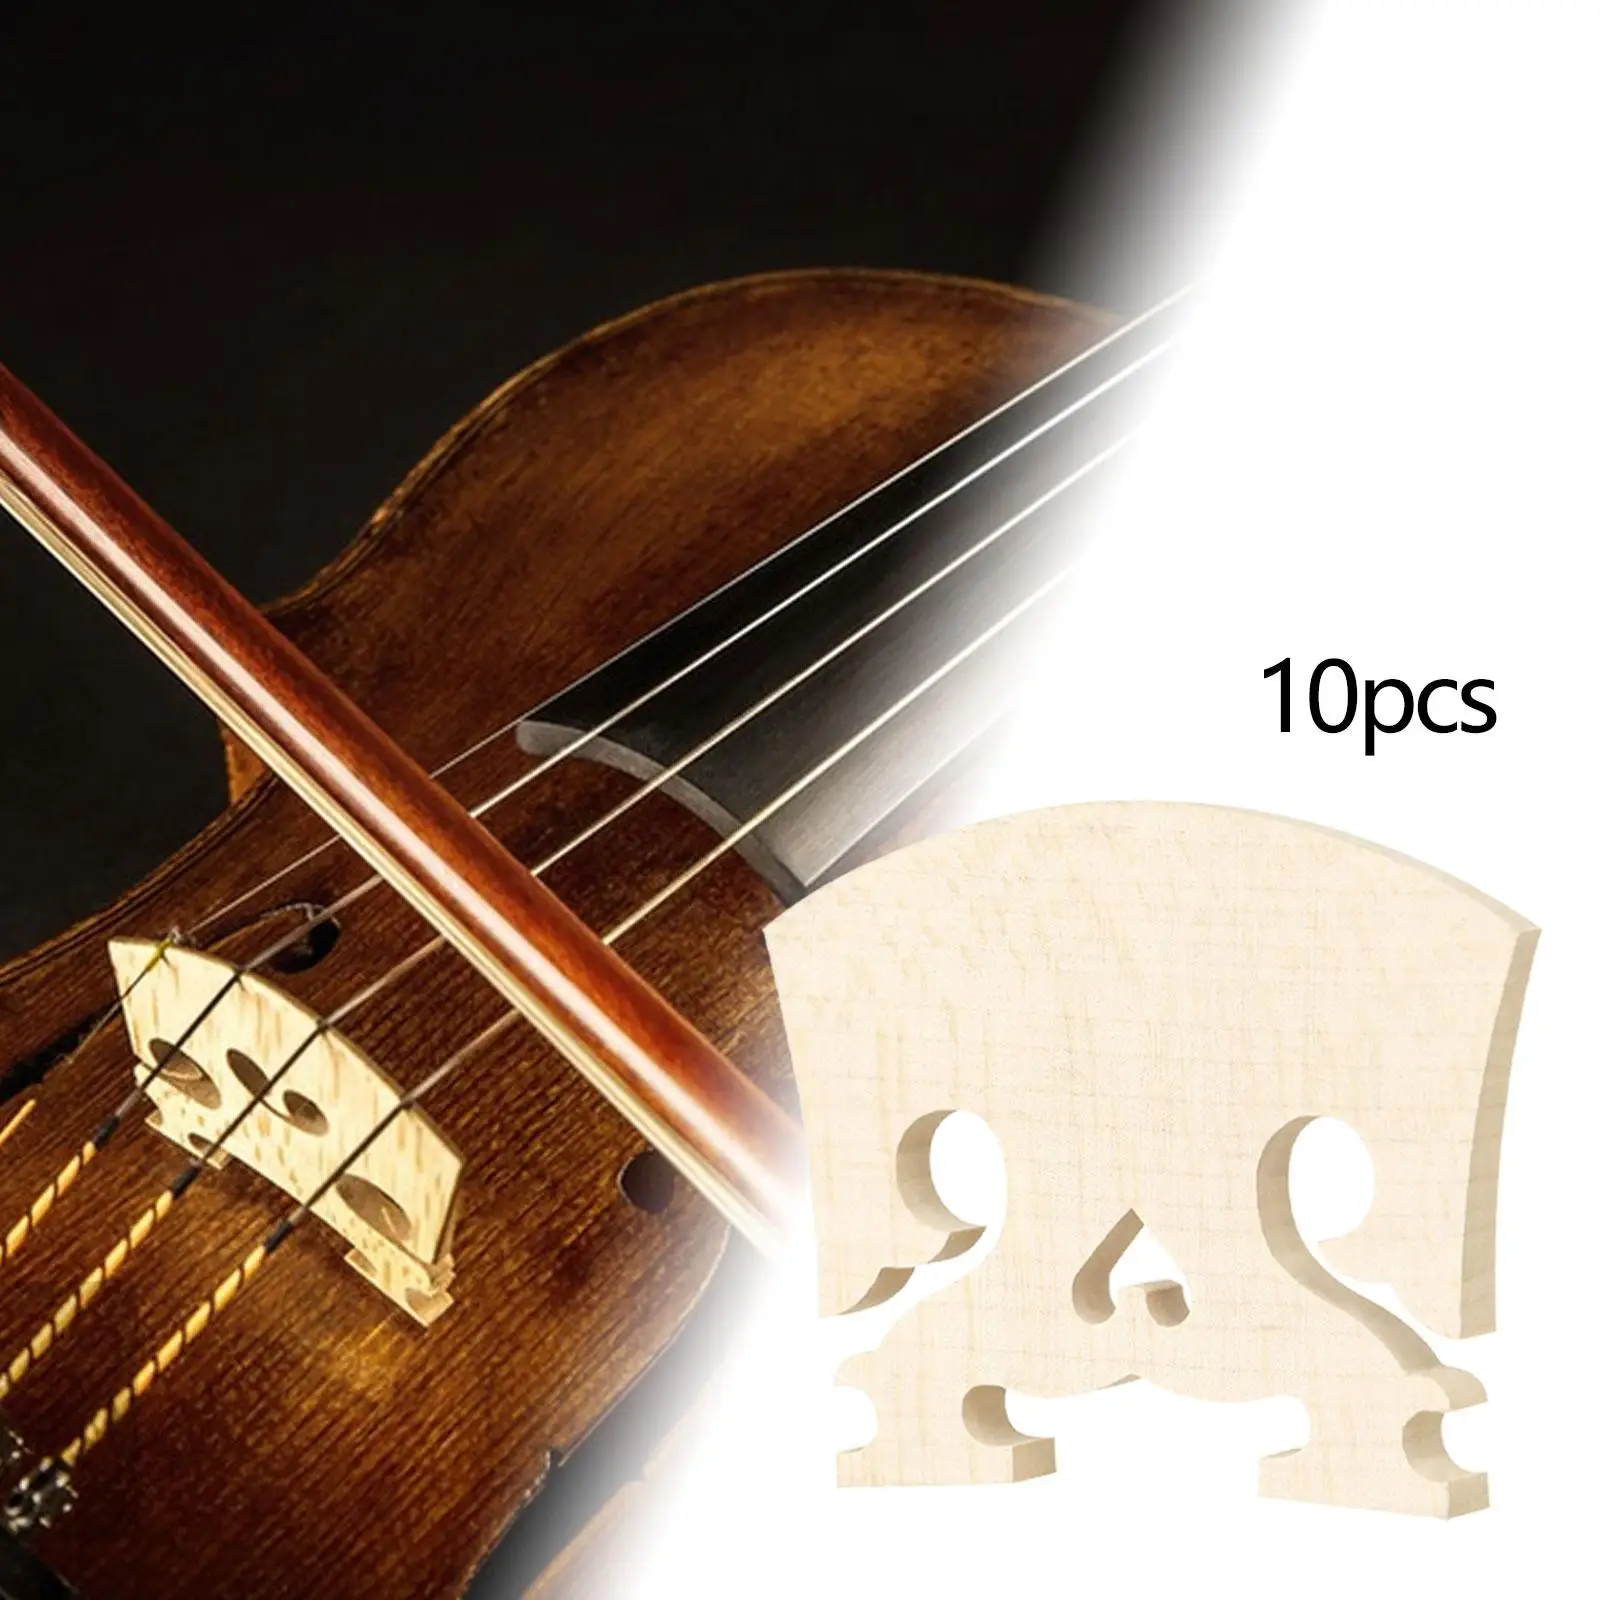 10 Штук деревянных скрипичных мостов в натуральную величину 4/4, облегченные запасные части для скрипки Изображение 3